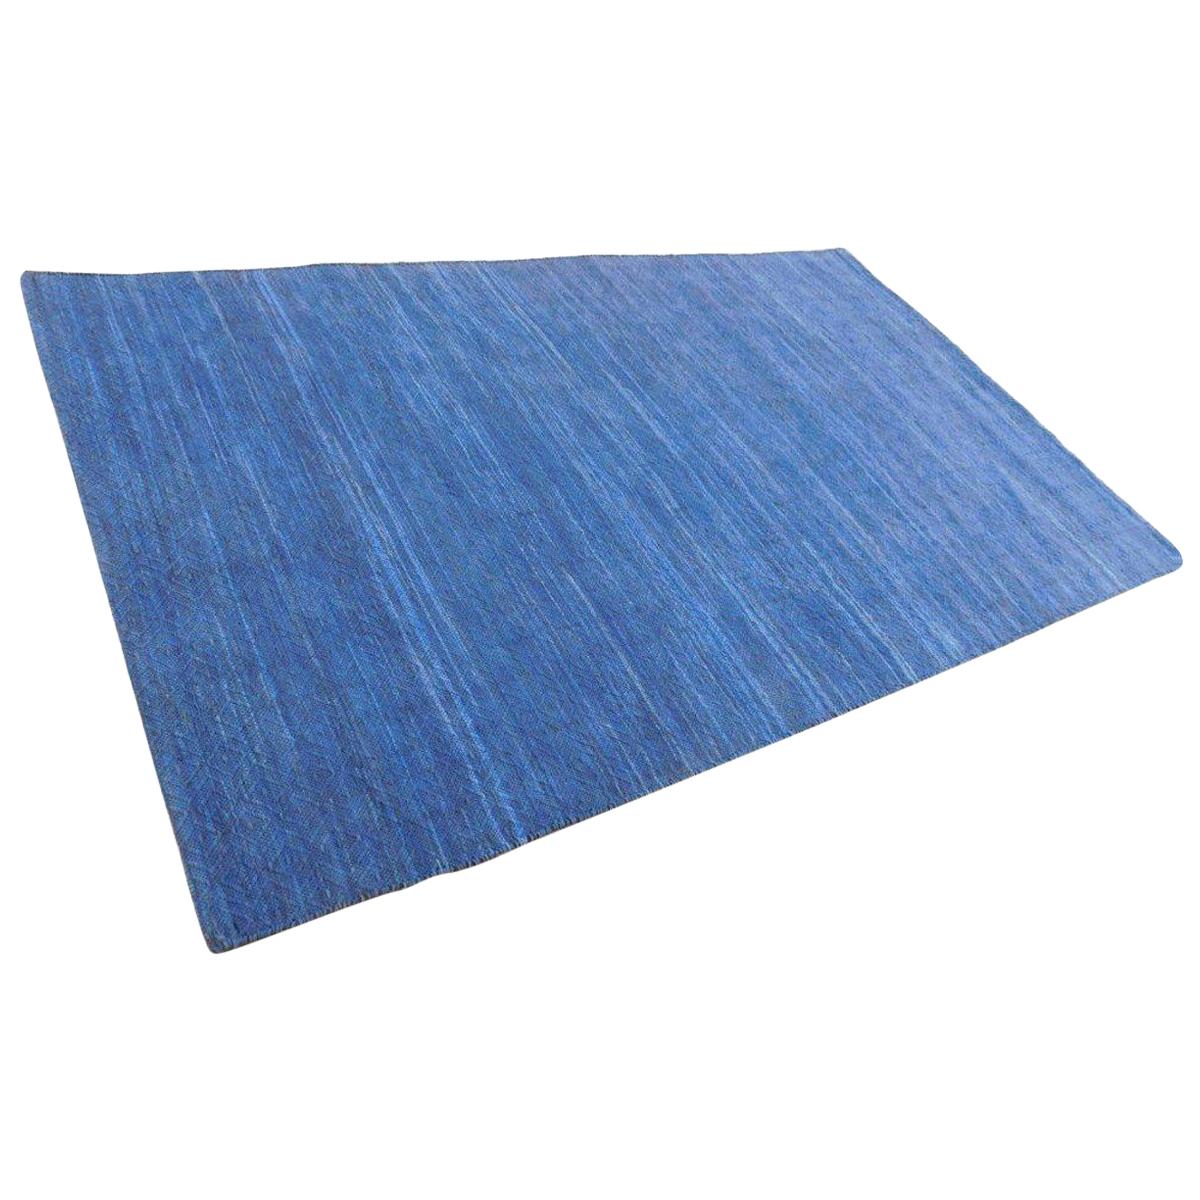 Solid Color Denim Blue Suede Modern Flat-Weave Handwoven Area Rug